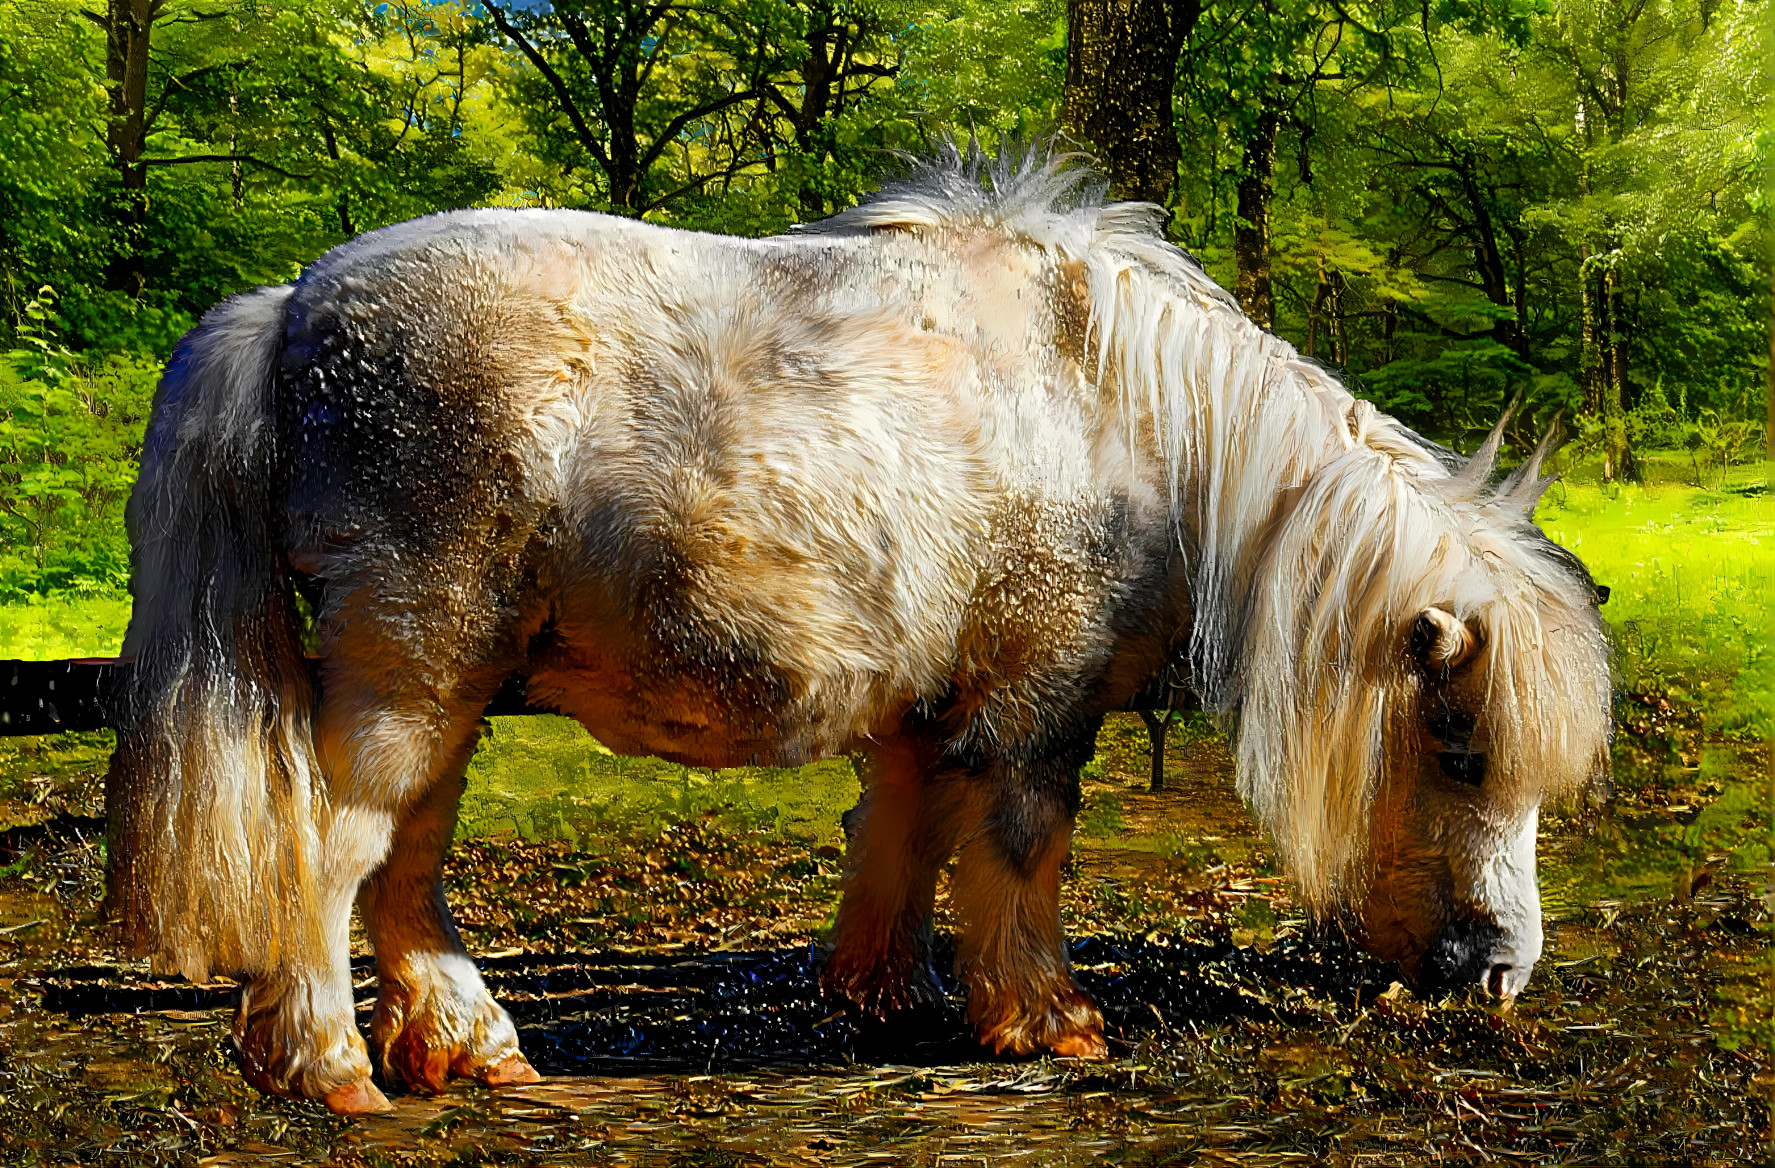 Shetland Pony 1